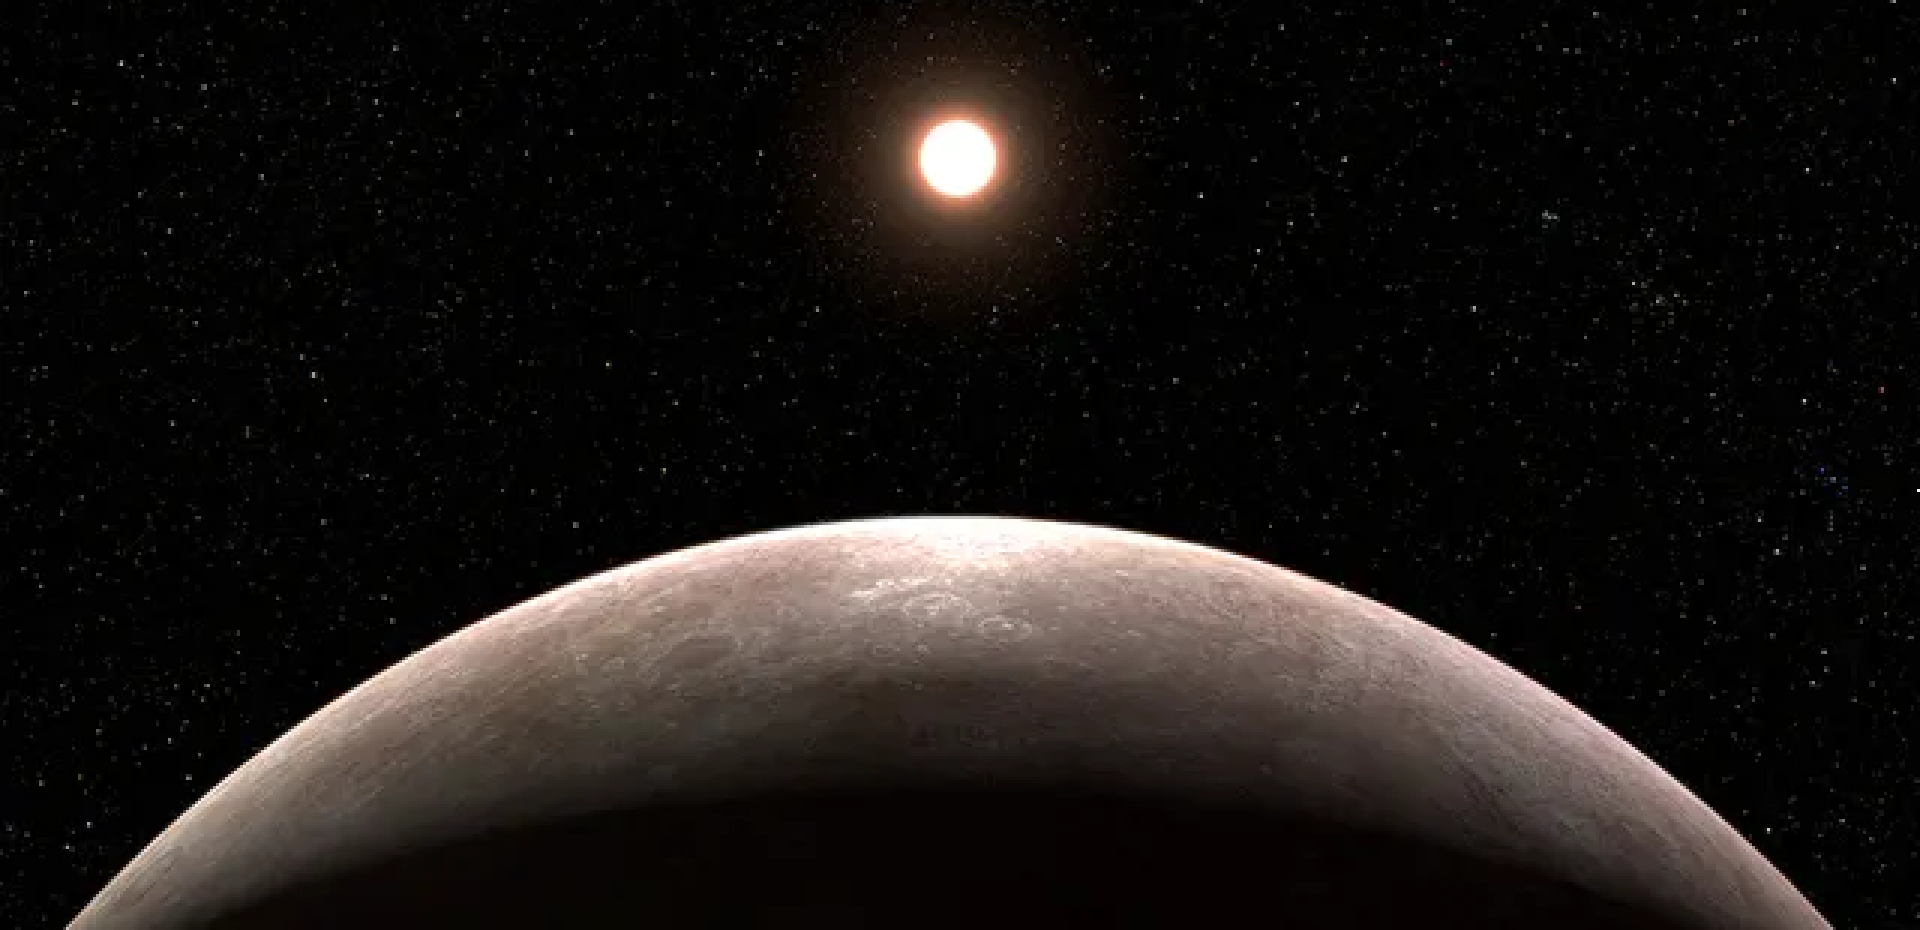 کشف جدید تلسکوپ فضایی جیمز وب؛ بلورهای کوارتز در جو یک سیاره فراخورشیدی
